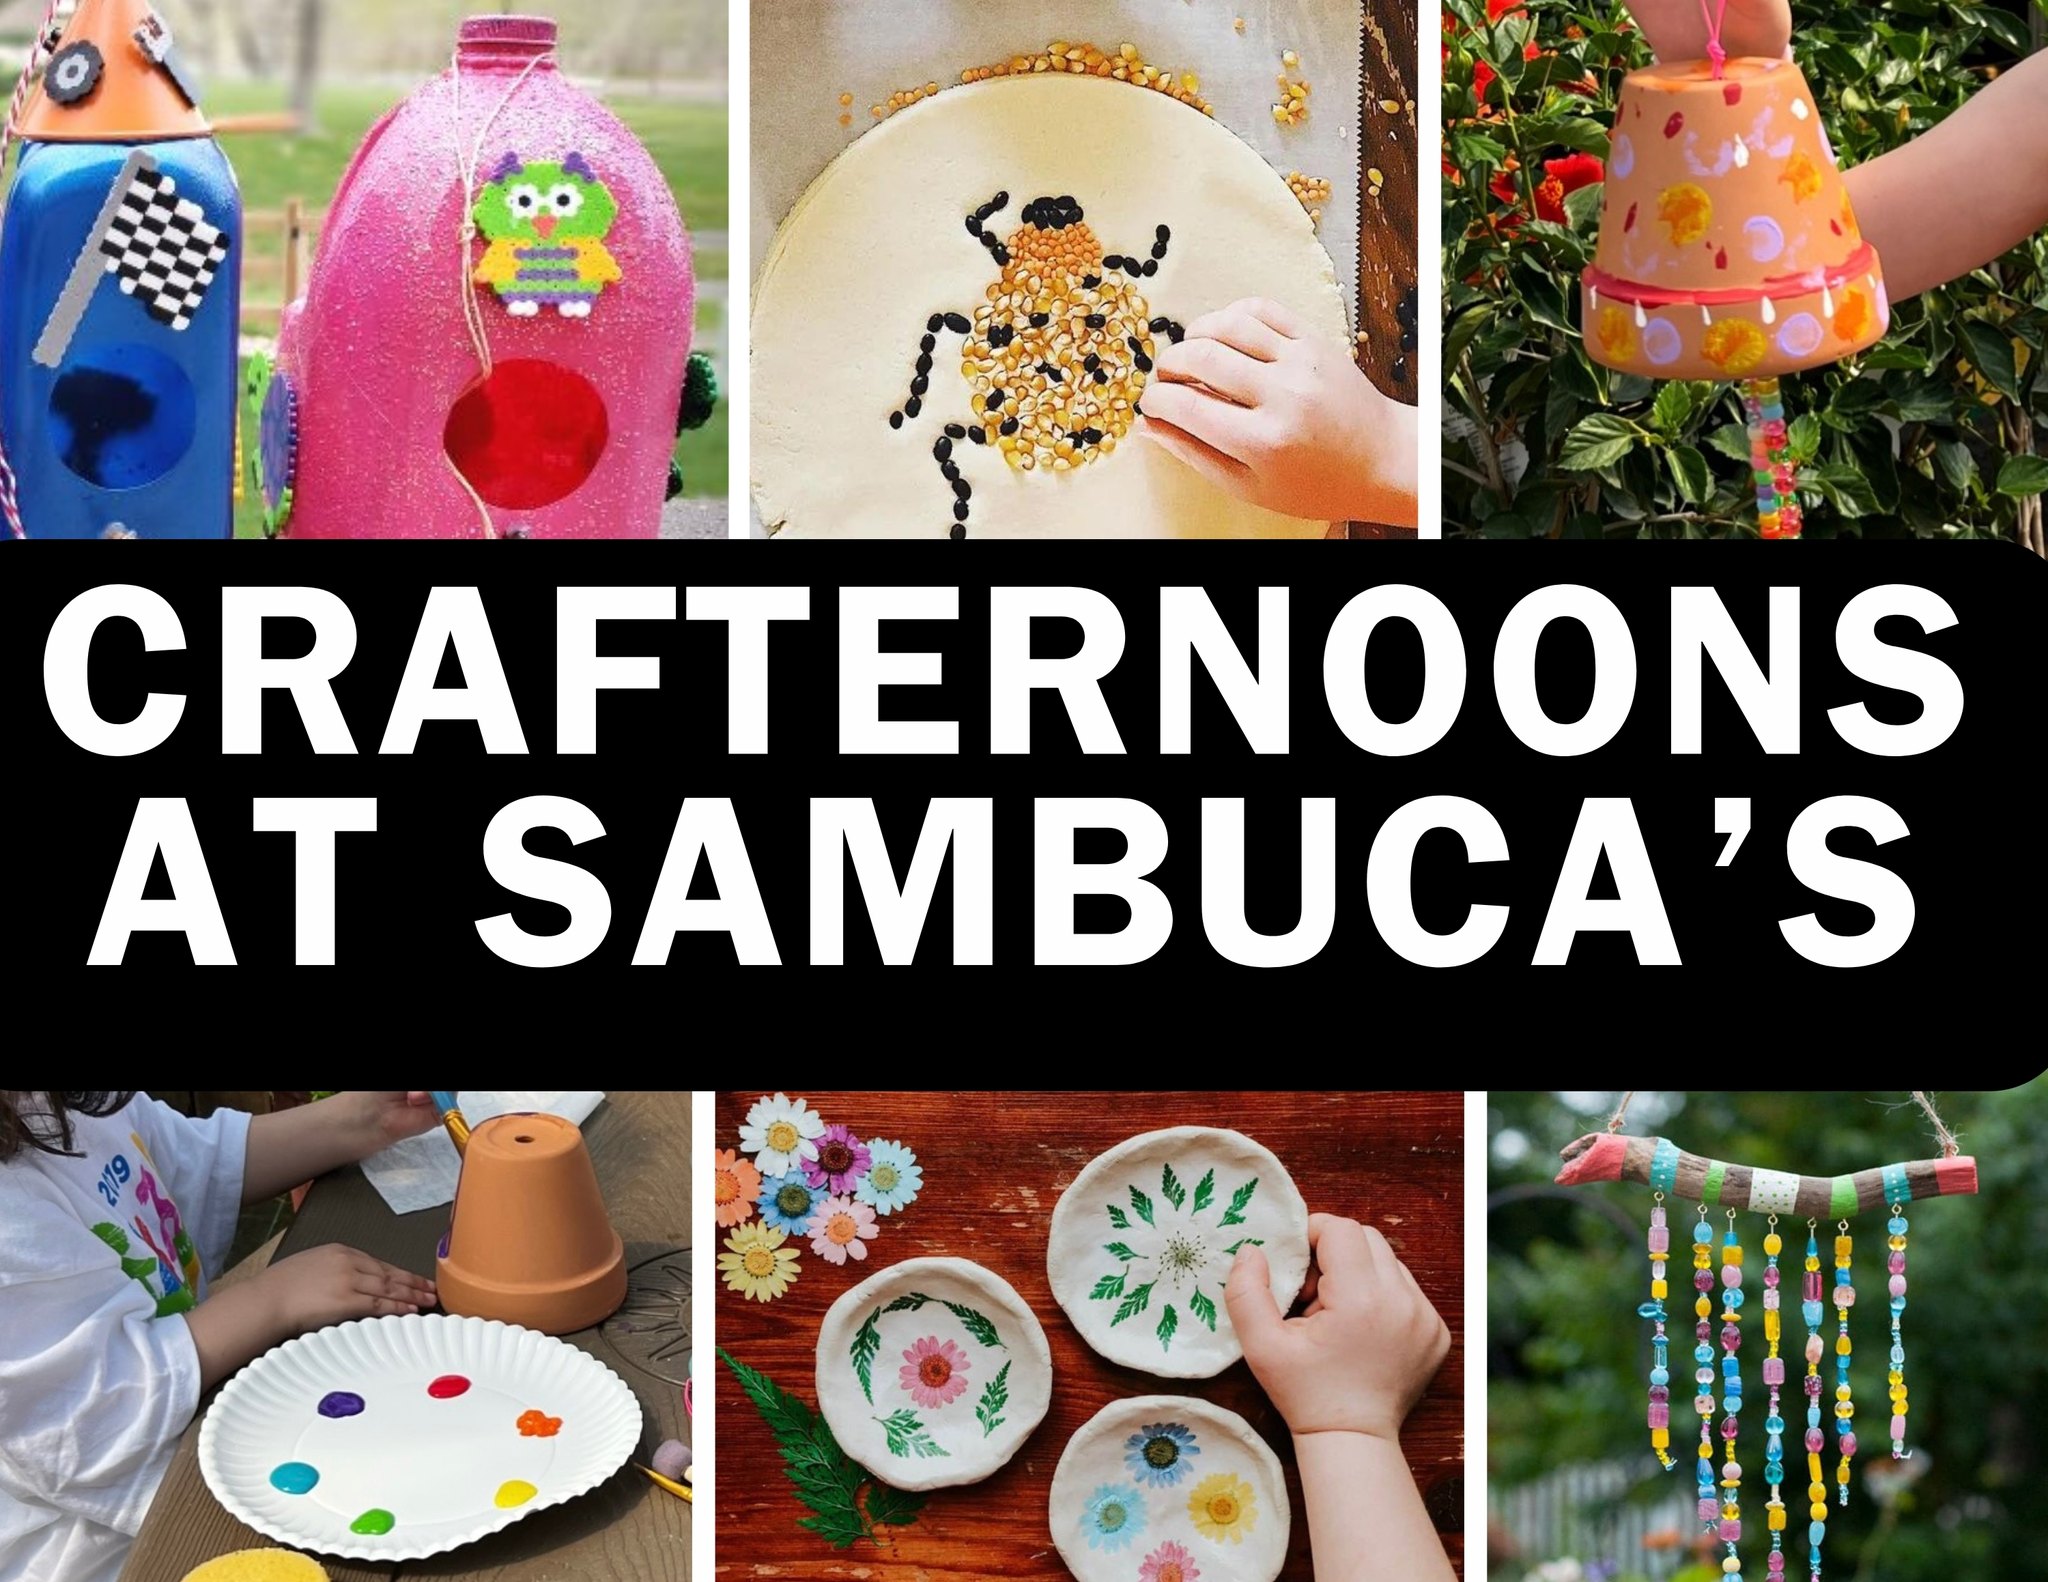 Crafternoons at Sambuca’s